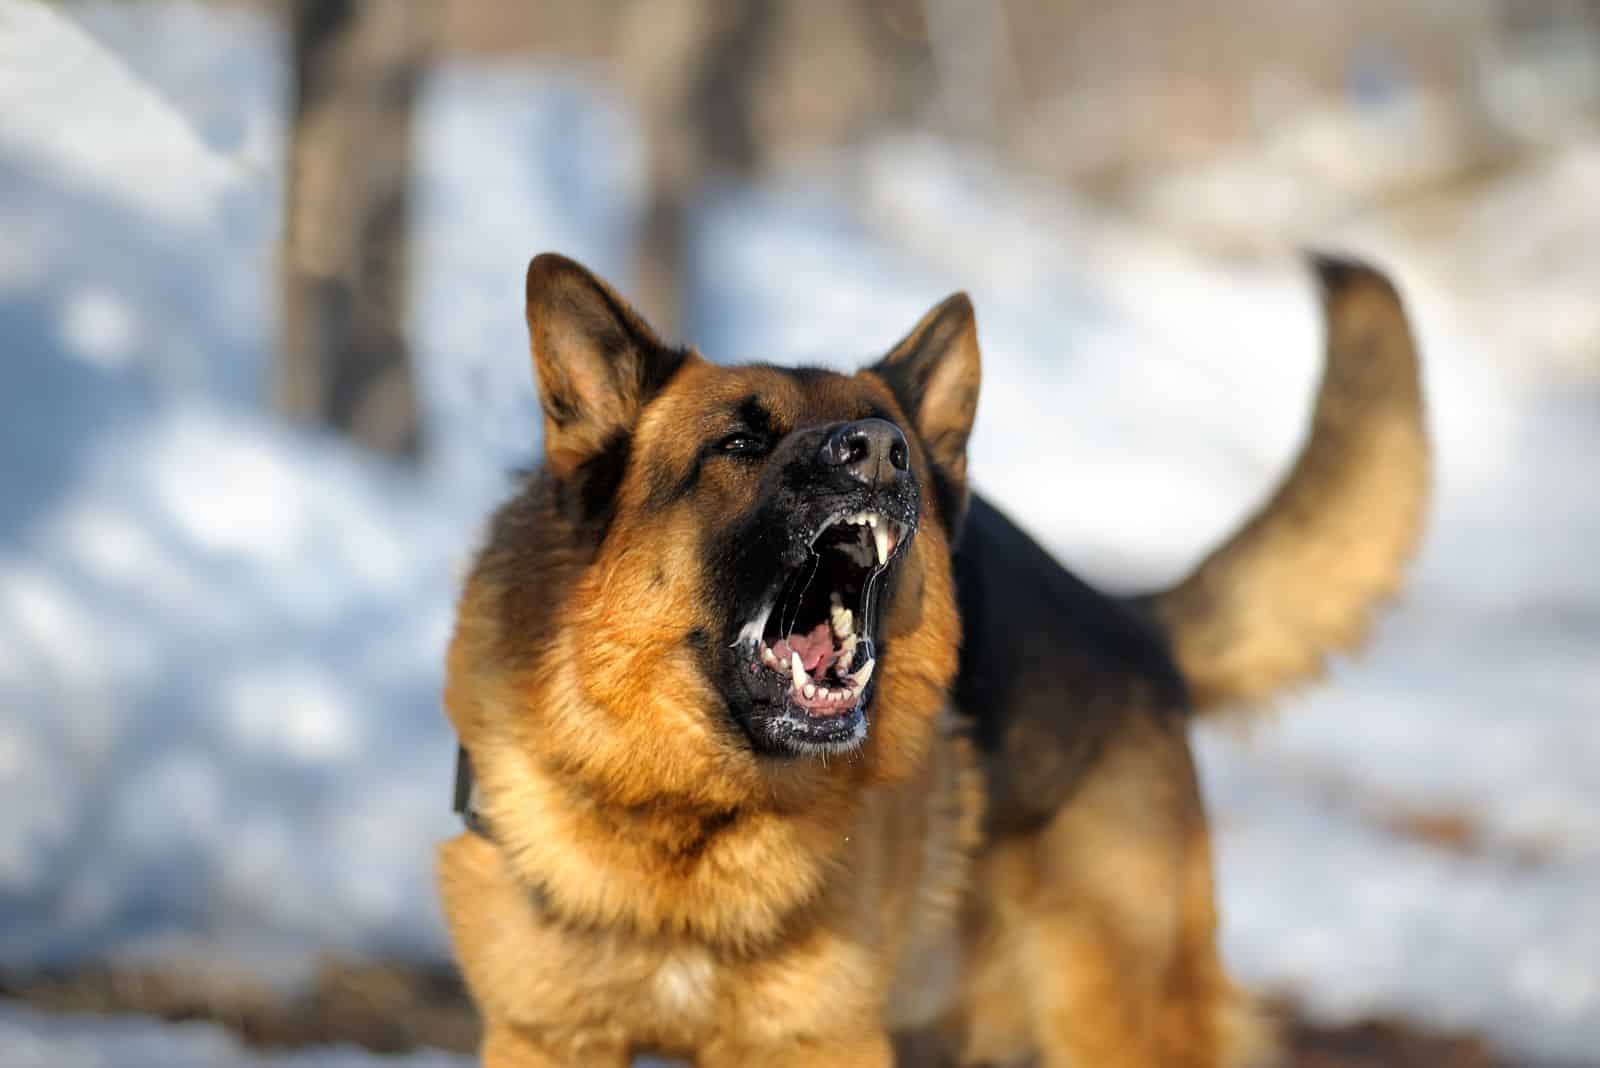 German shepherd barks aggressively